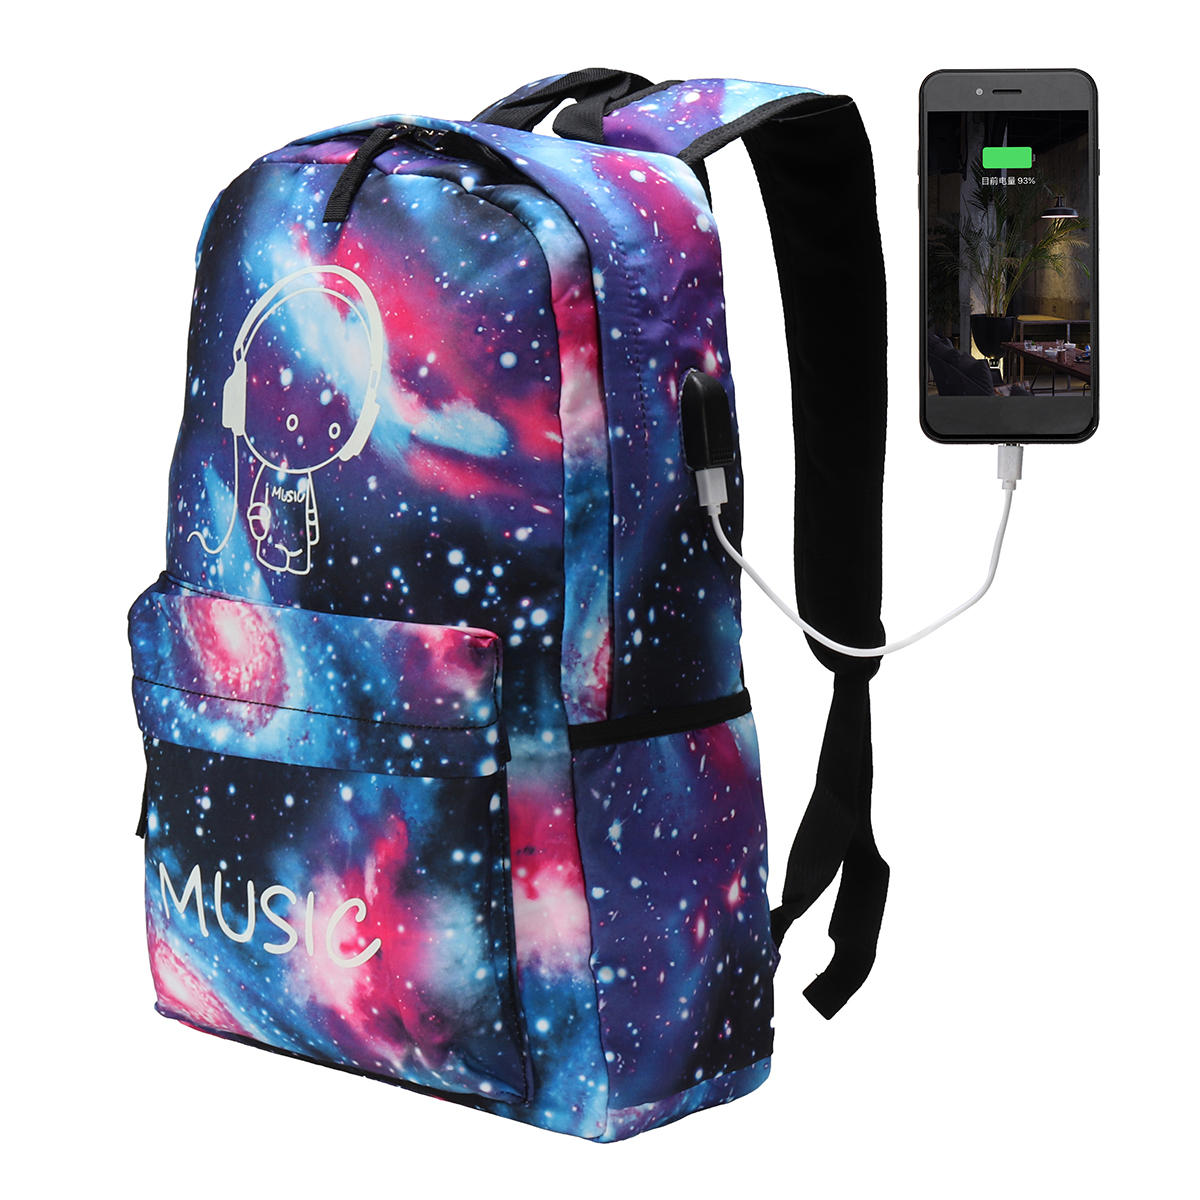 Outdoor-Nachtlicht Rucksack USB Oxford Schule Tasche Umhängetasche Wasserdichte Handtasche